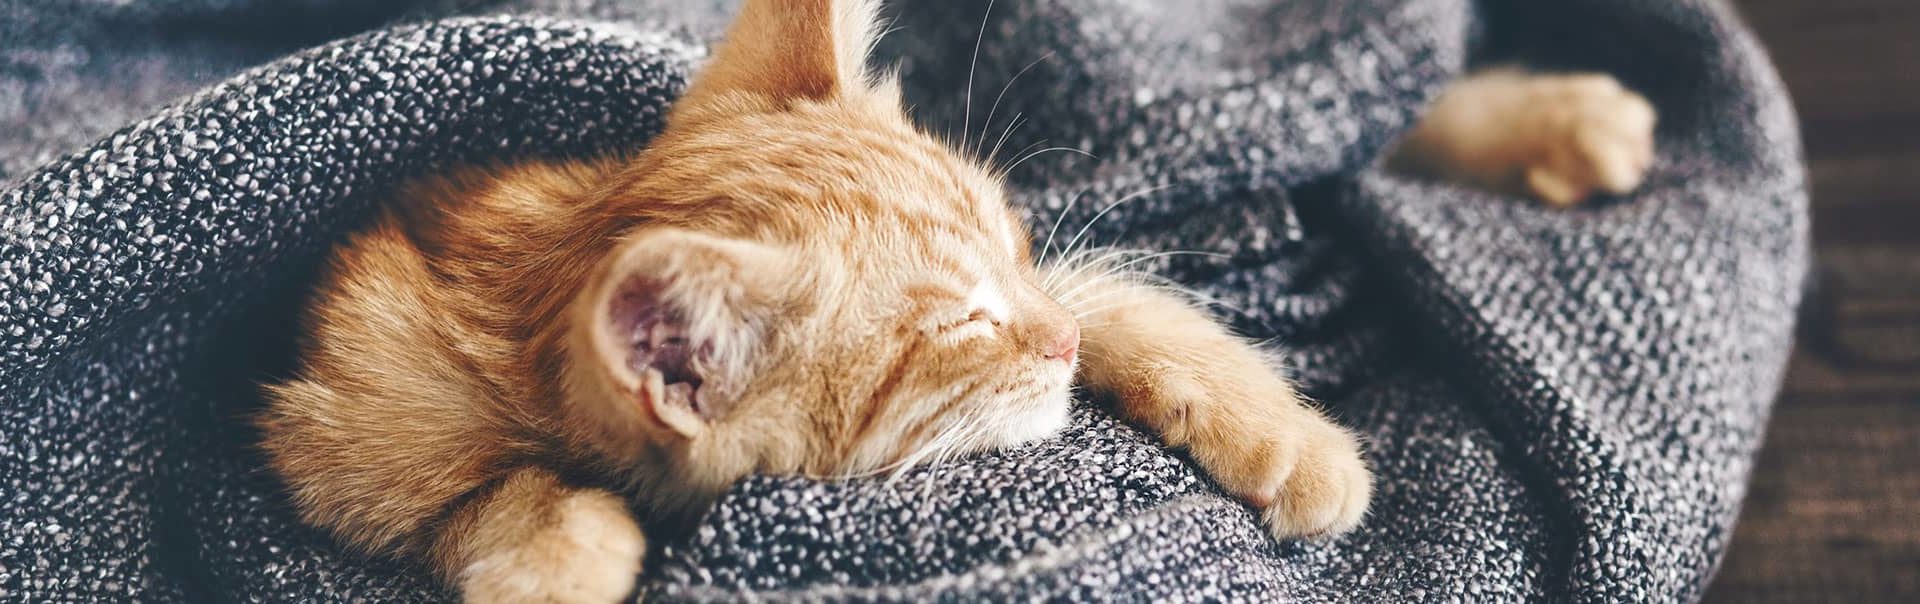 Kitten sleeping in a blanket